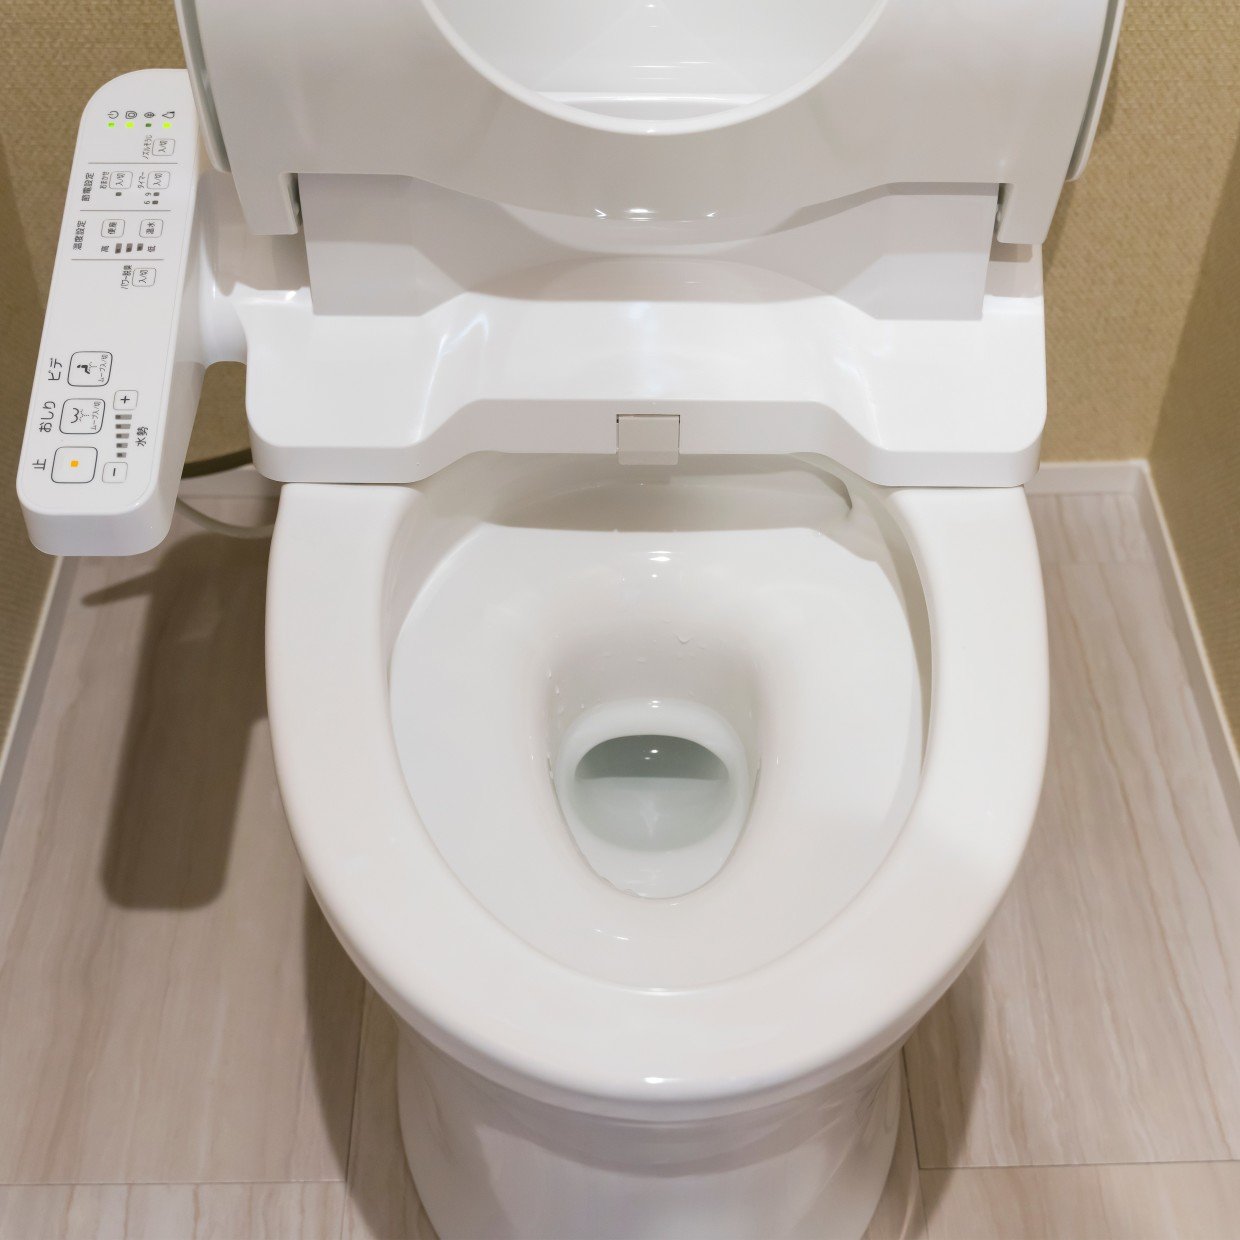  「トイレの悪臭」の原因となる“掃除で見落としがちな6つの場所”【知って得する掃除術】 